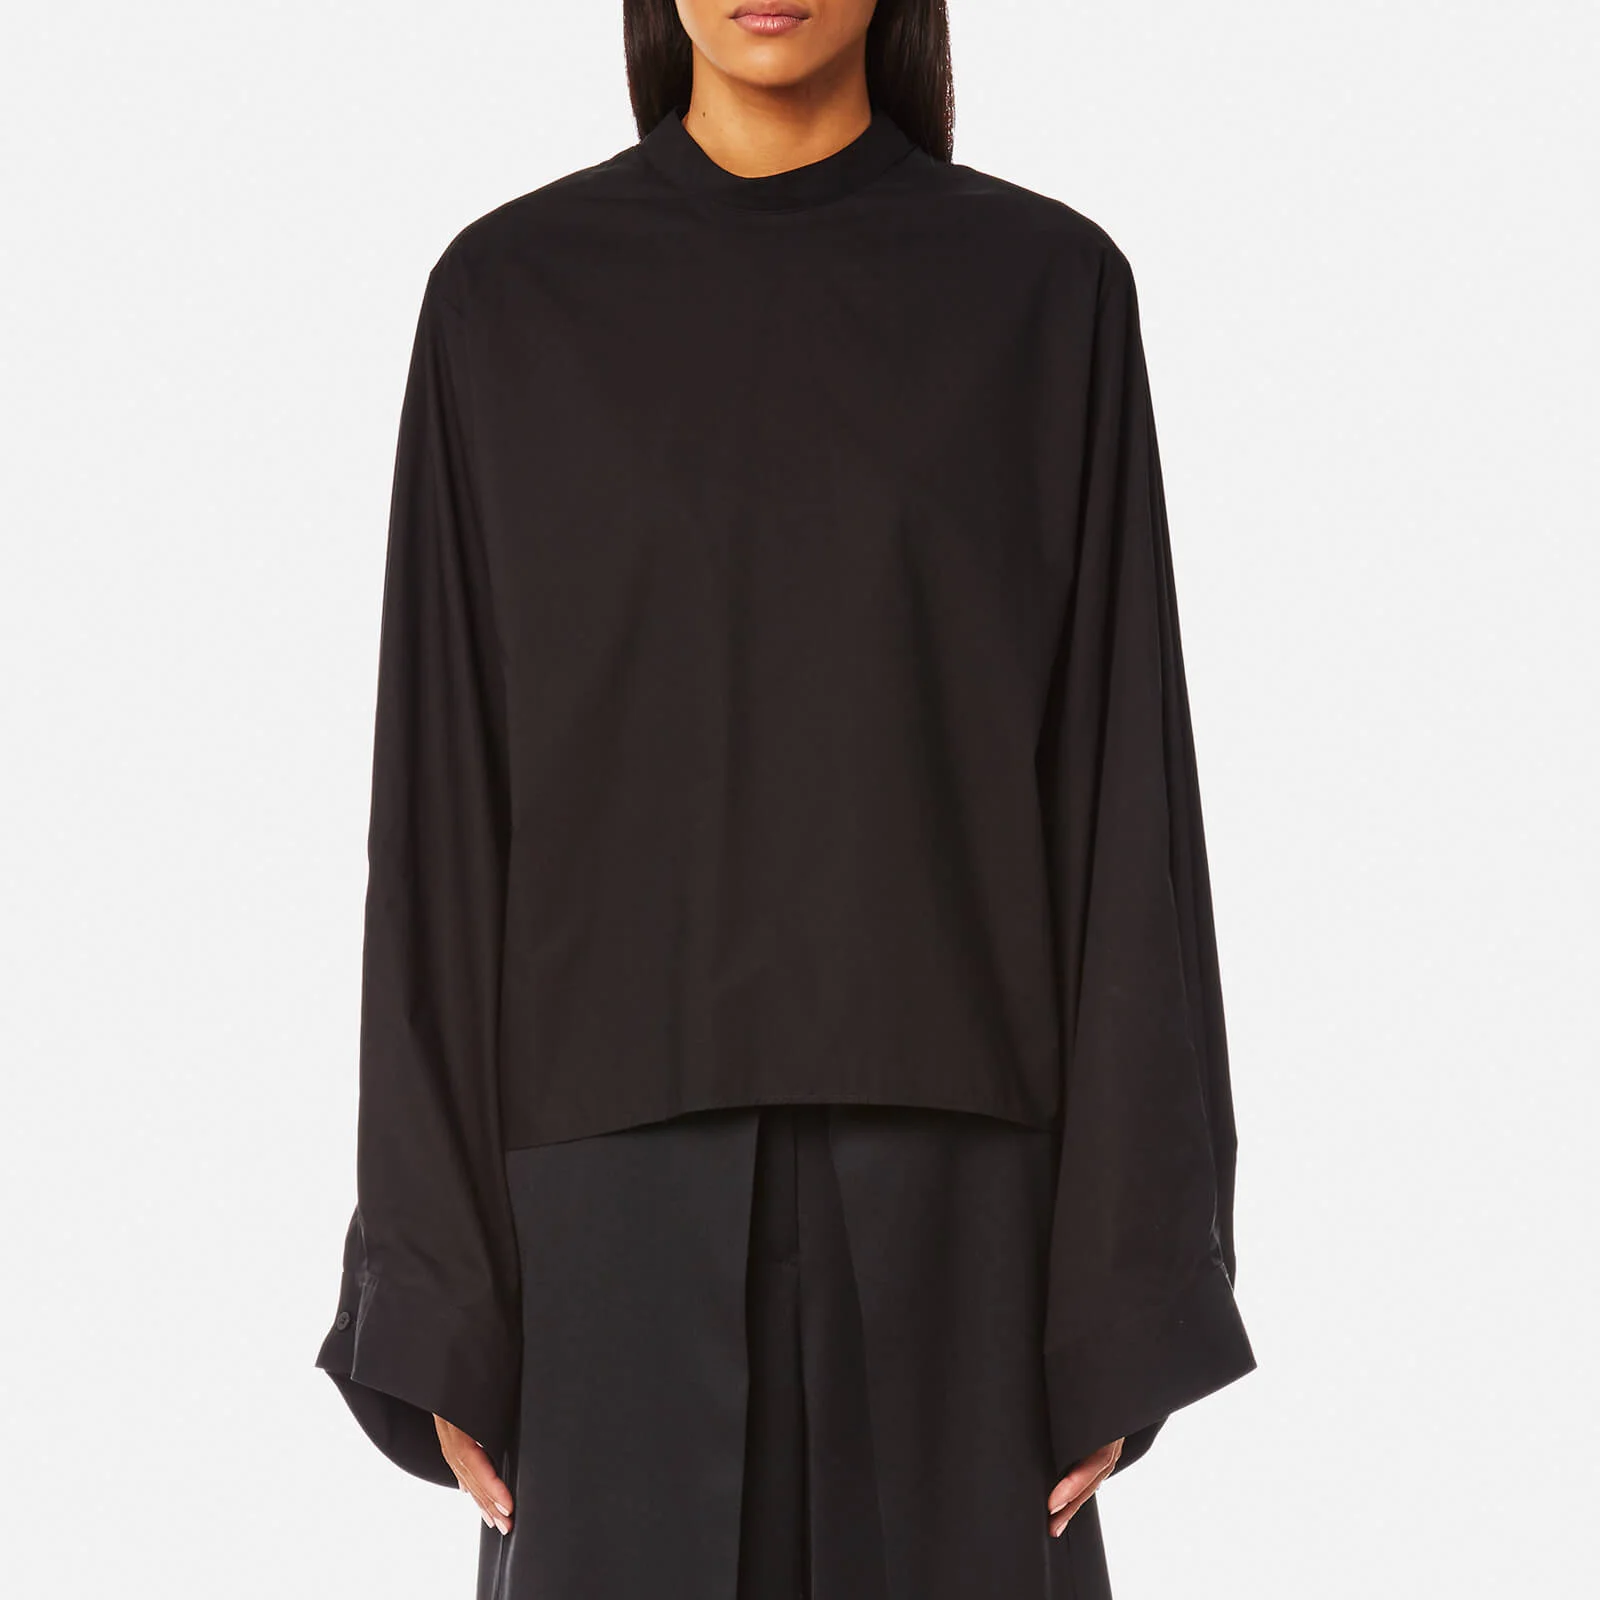 MM6 Maison Margiela Women's Oversized Sleeve High Neck Shirt - Black Image 1